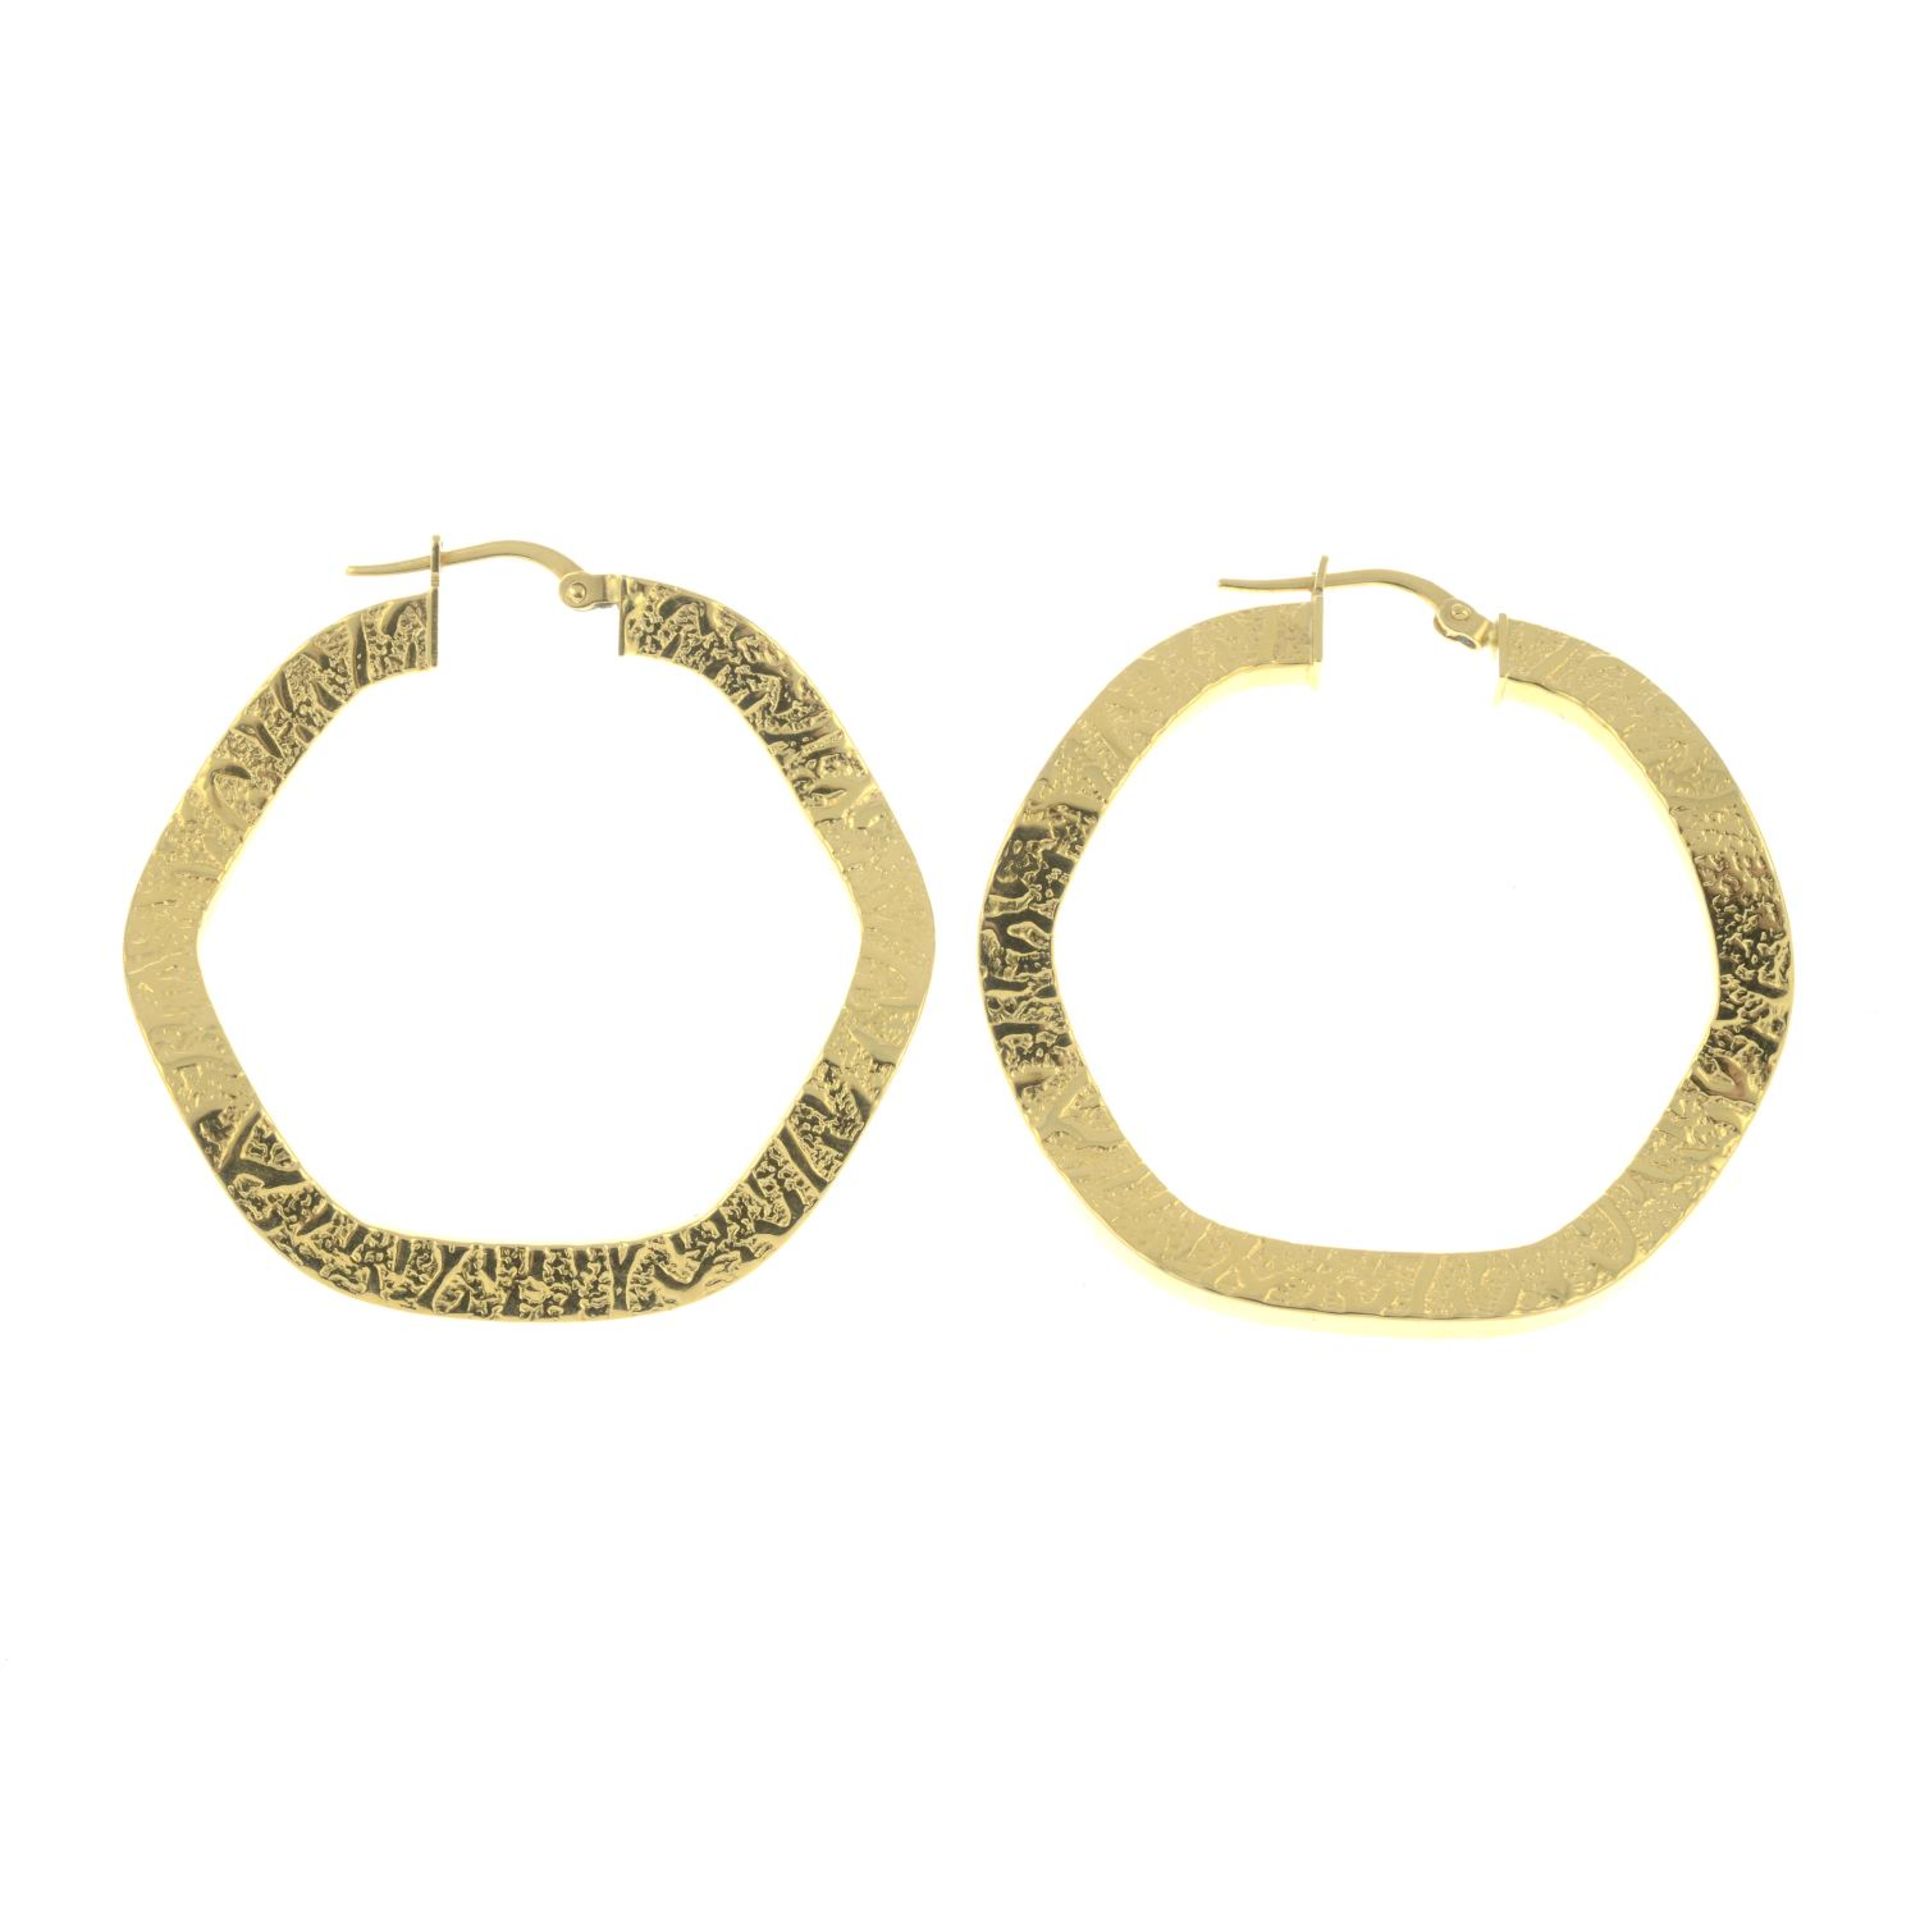 A pair of textured hoop earrings.Italian marks.